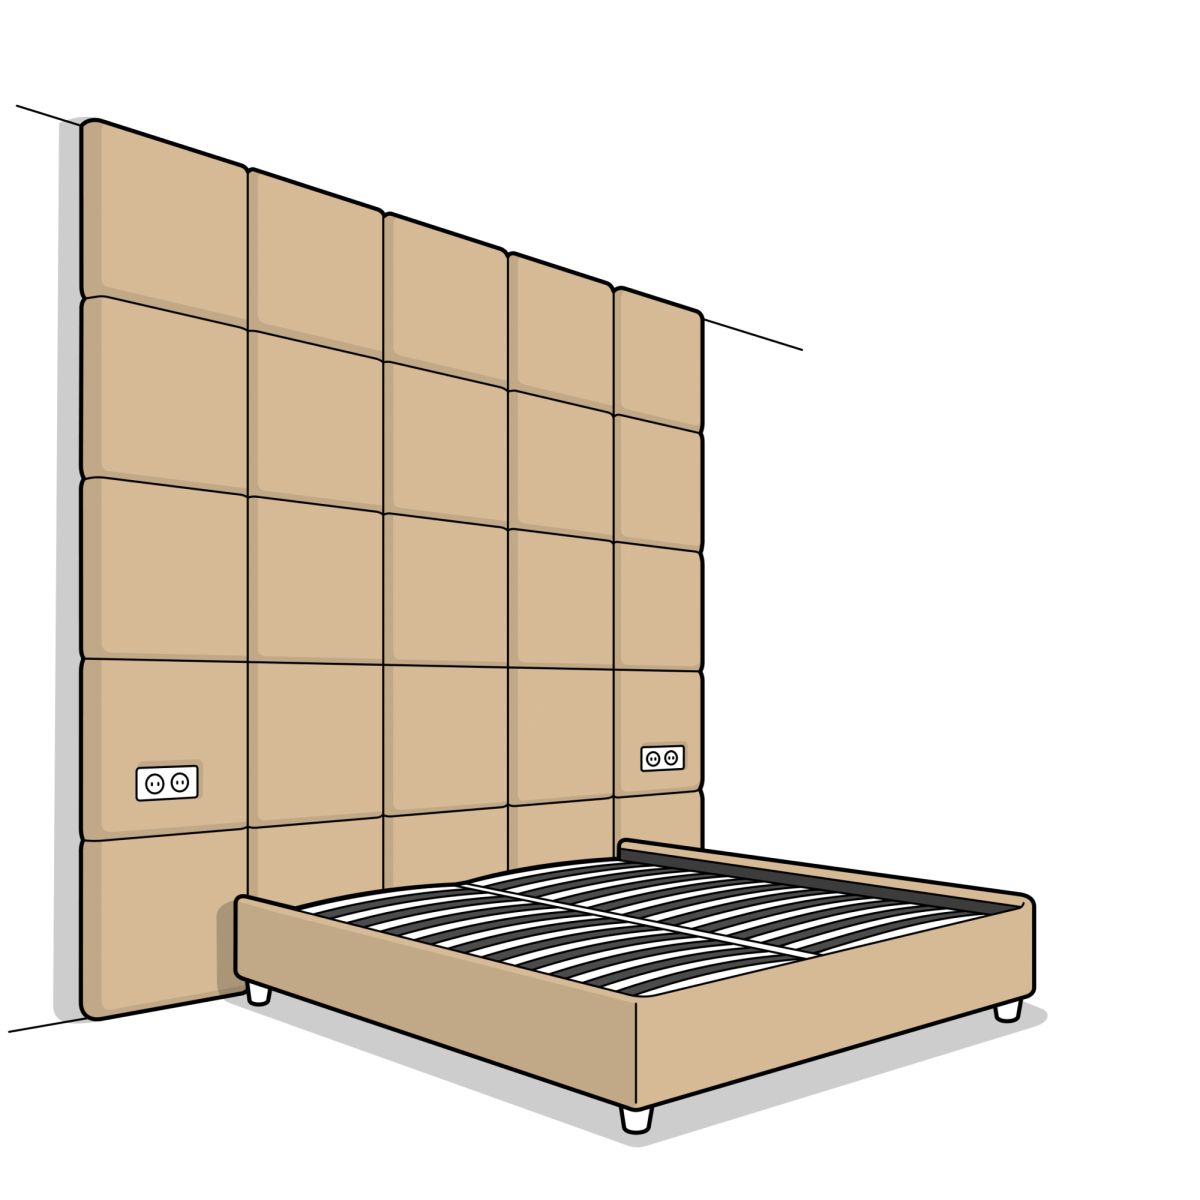 мягкая панель «Квадраты» с кроватью-компаньоном